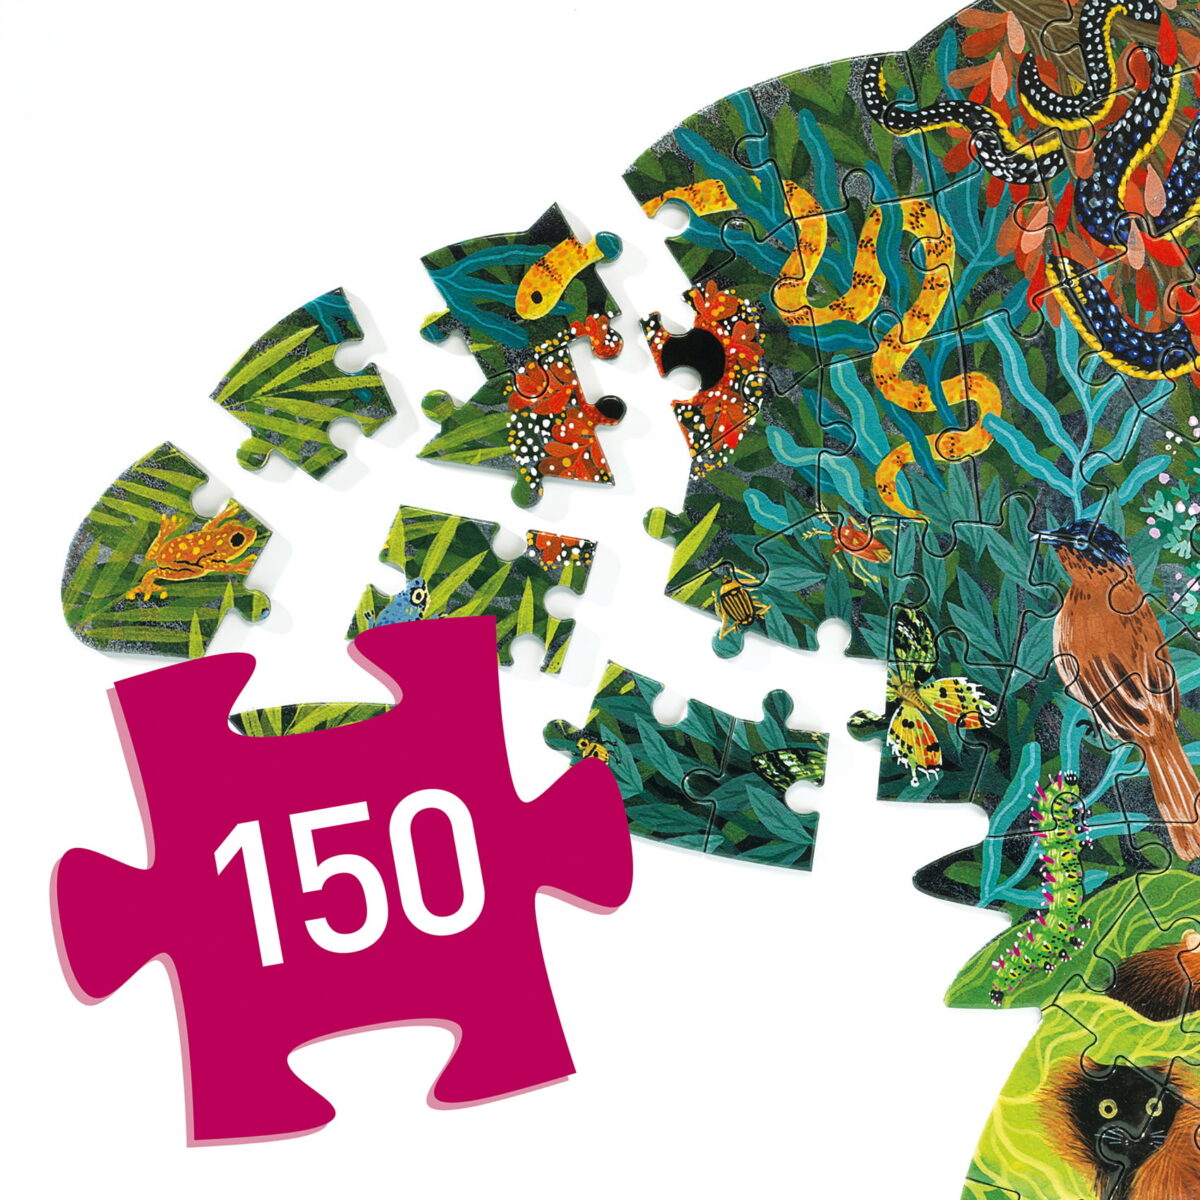 Djeco Puzzle Artystyczne Kameleon - 150 Elem. Dj07655